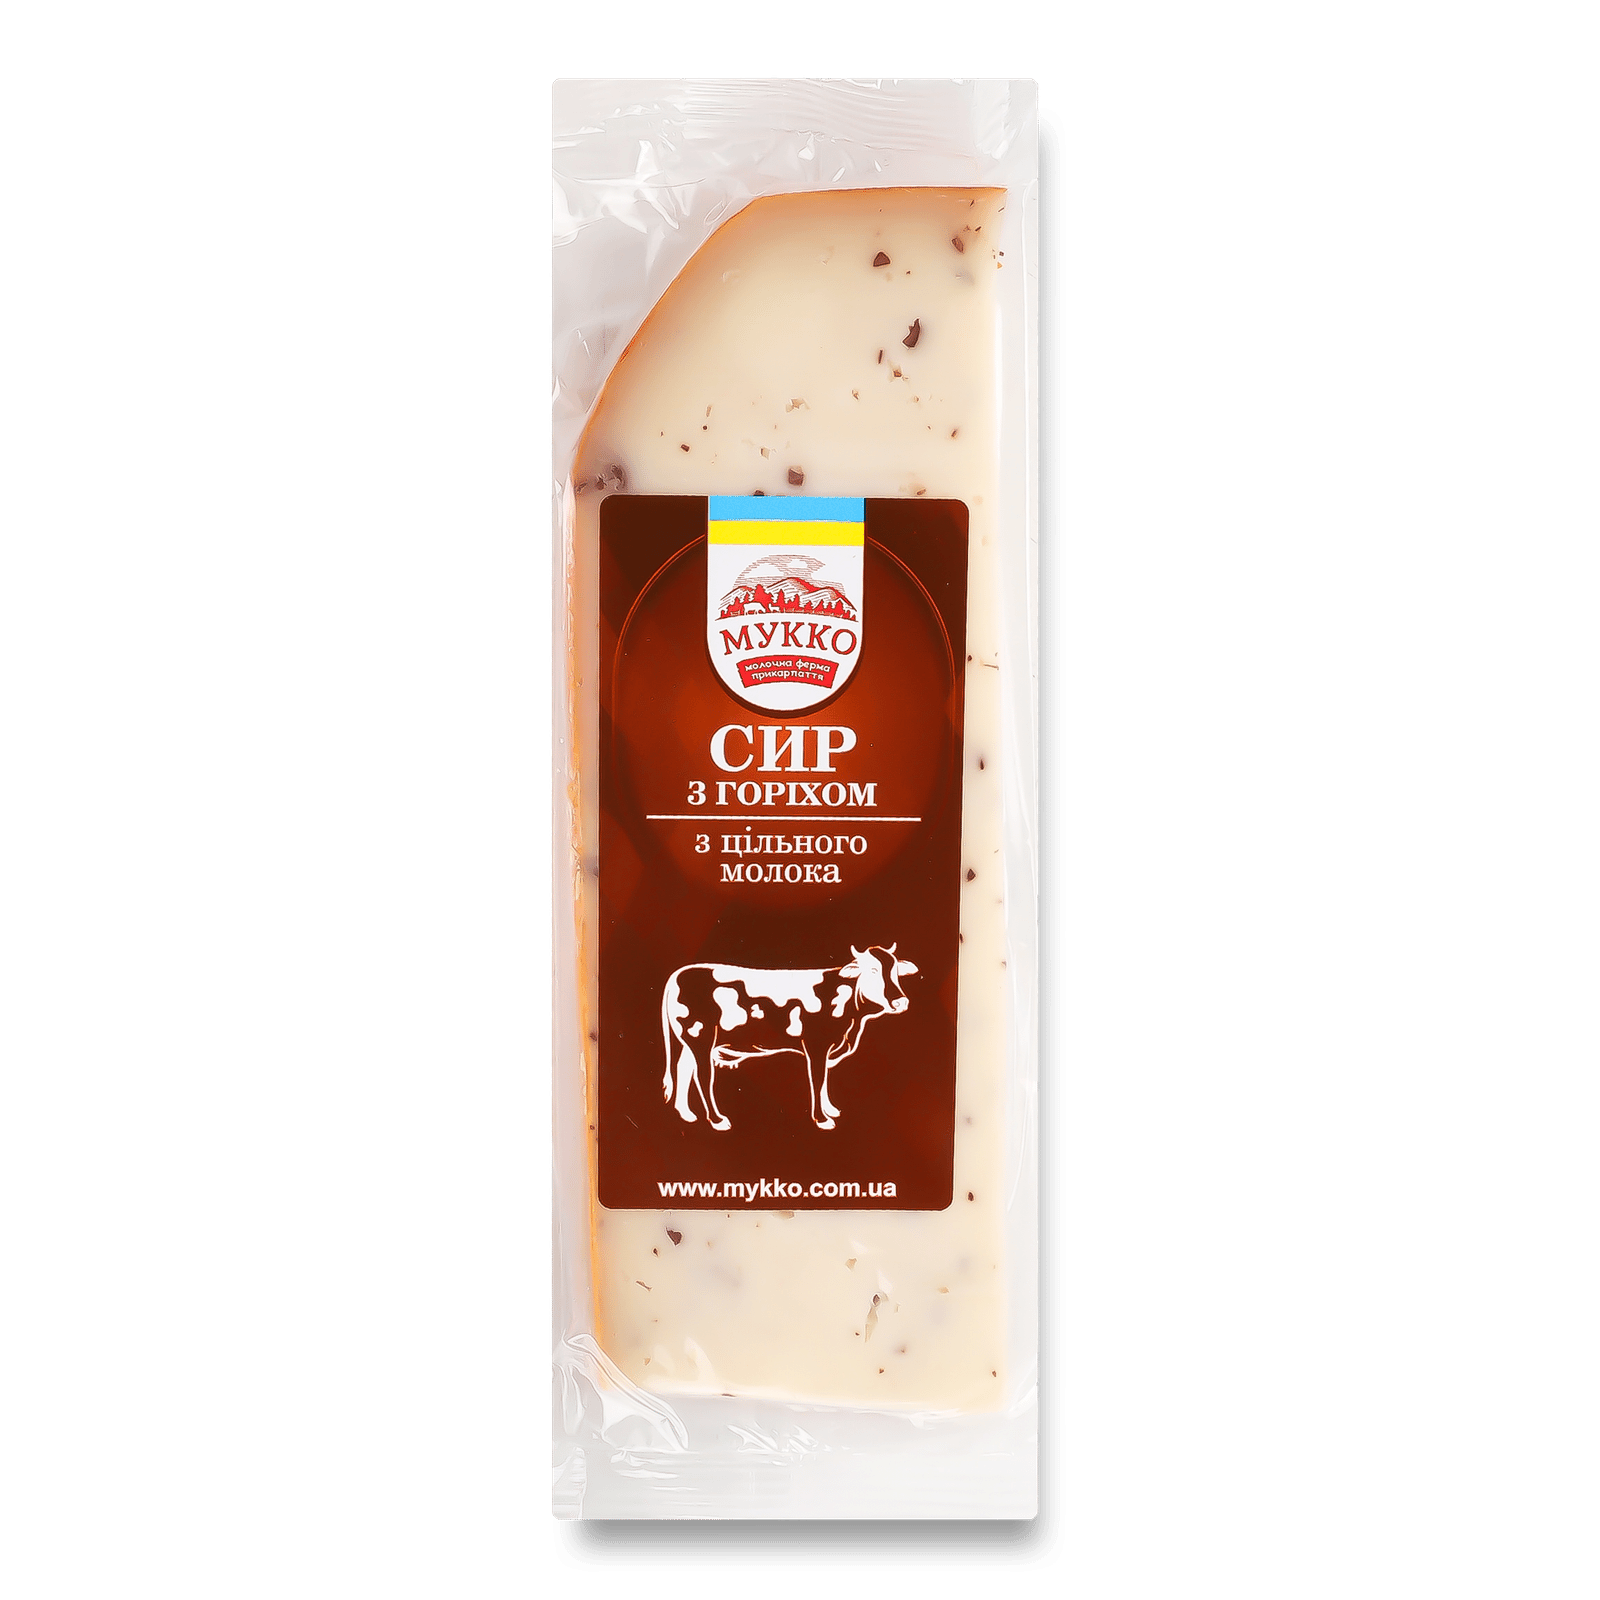 Сир «Лавка традицій» «Мукко» з горіхом 50,2% - 1